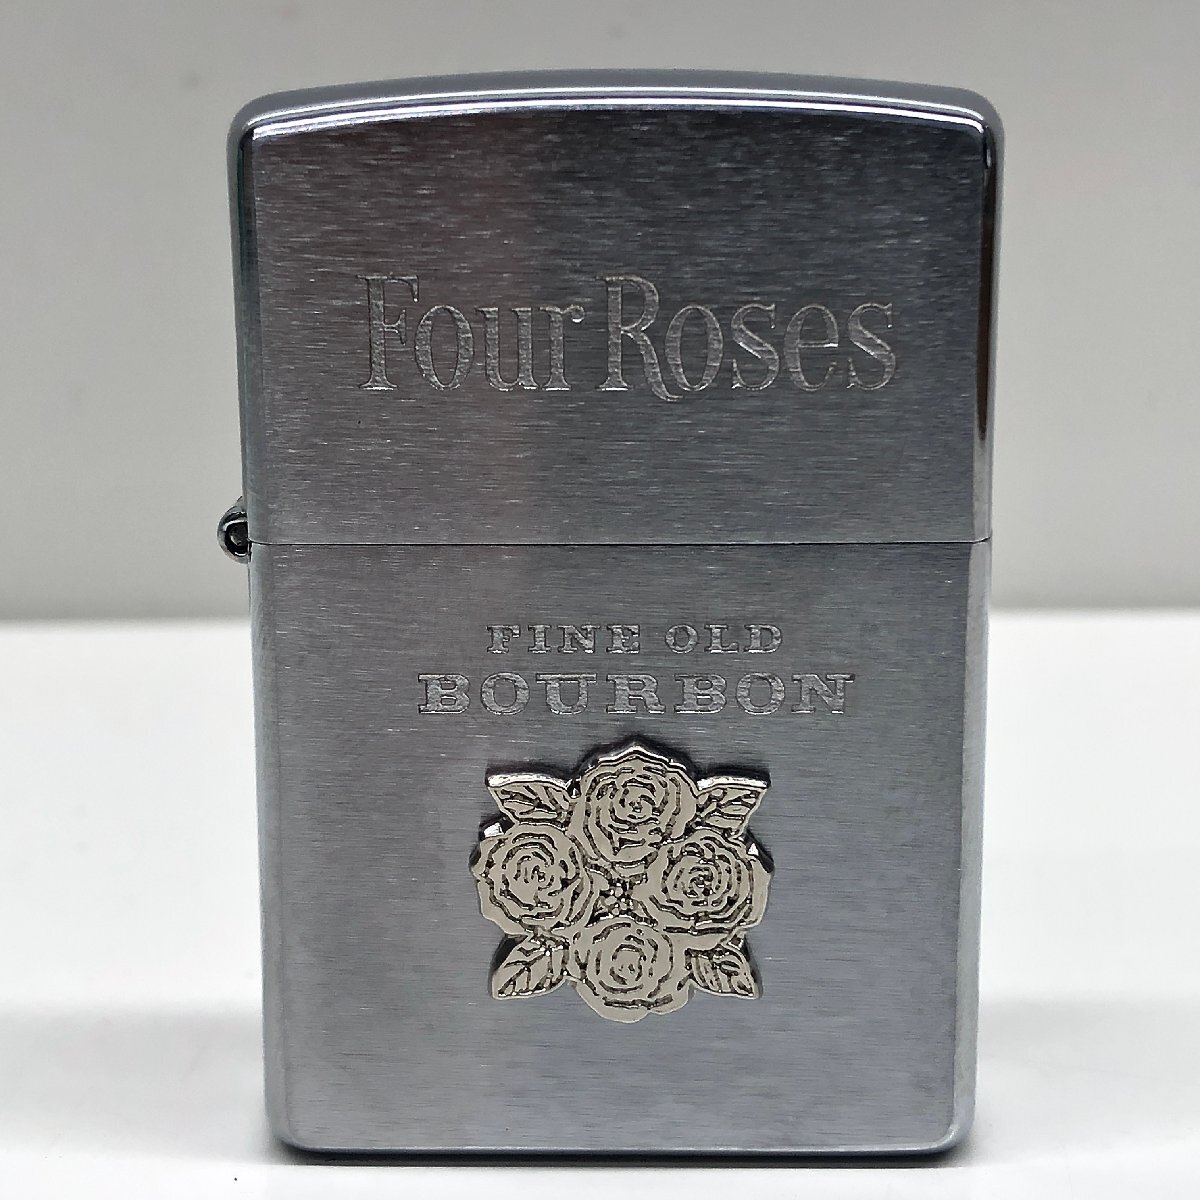 【未使用】Four Roses フォアローゼス FINE OLD BOURBON ZIPPO ジッポ 喫煙具 コレクション 火花確認済み ケースの画像2